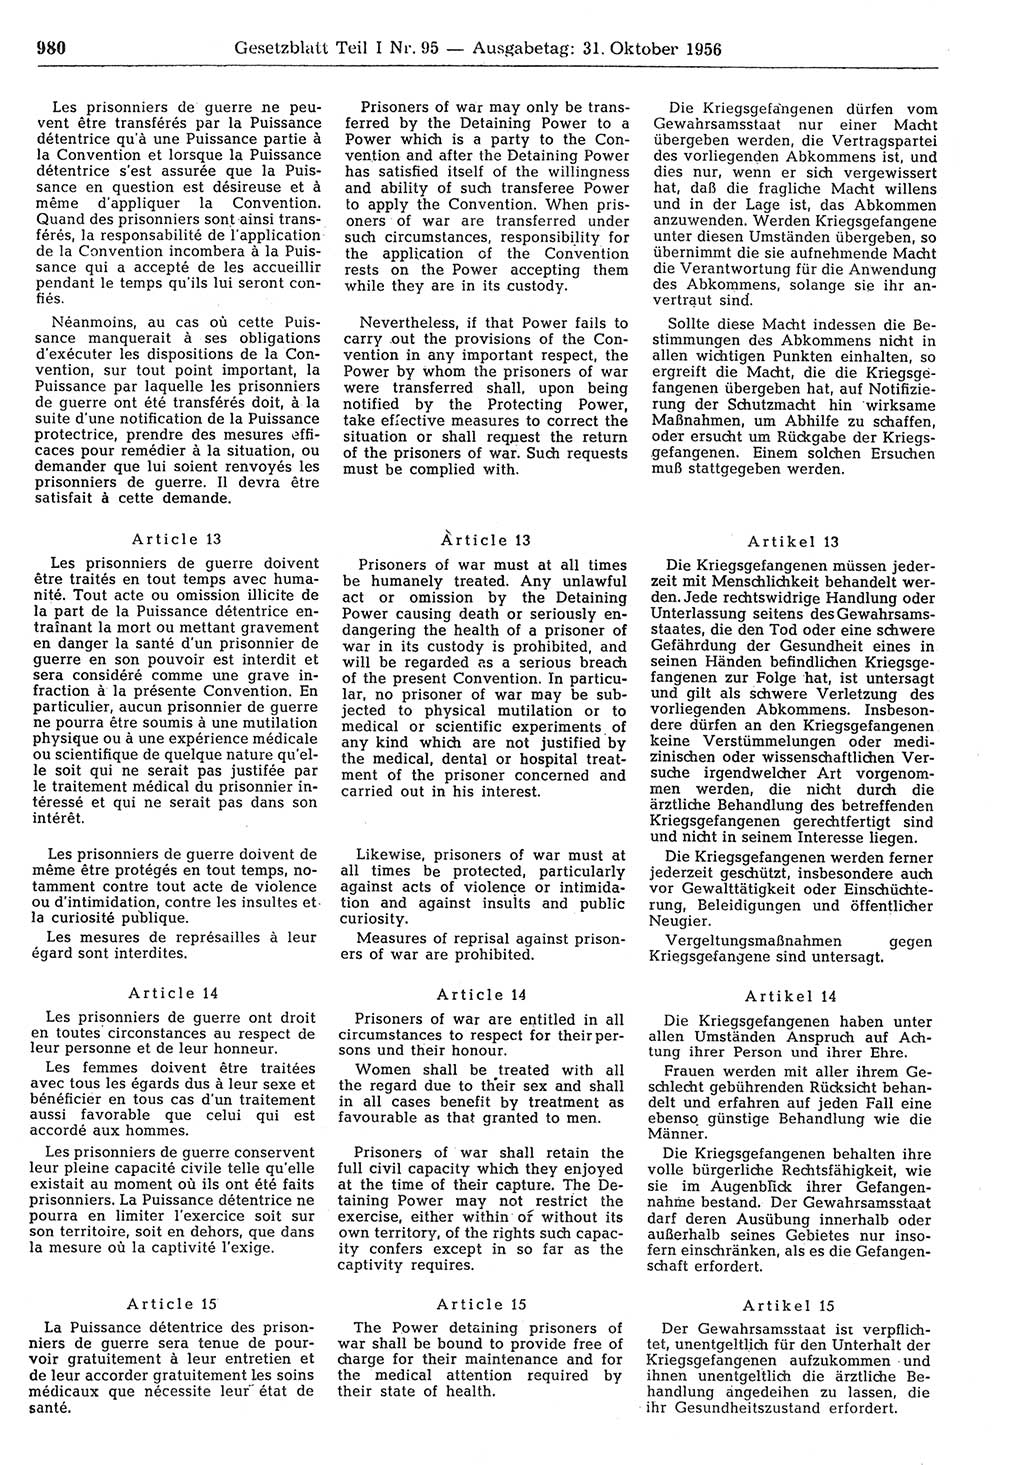 Gesetzblatt (GBl.) der Deutschen Demokratischen Republik (DDR) Teil â… 1956, Seite 980 (GBl. DDR â… 1956, S. 980)